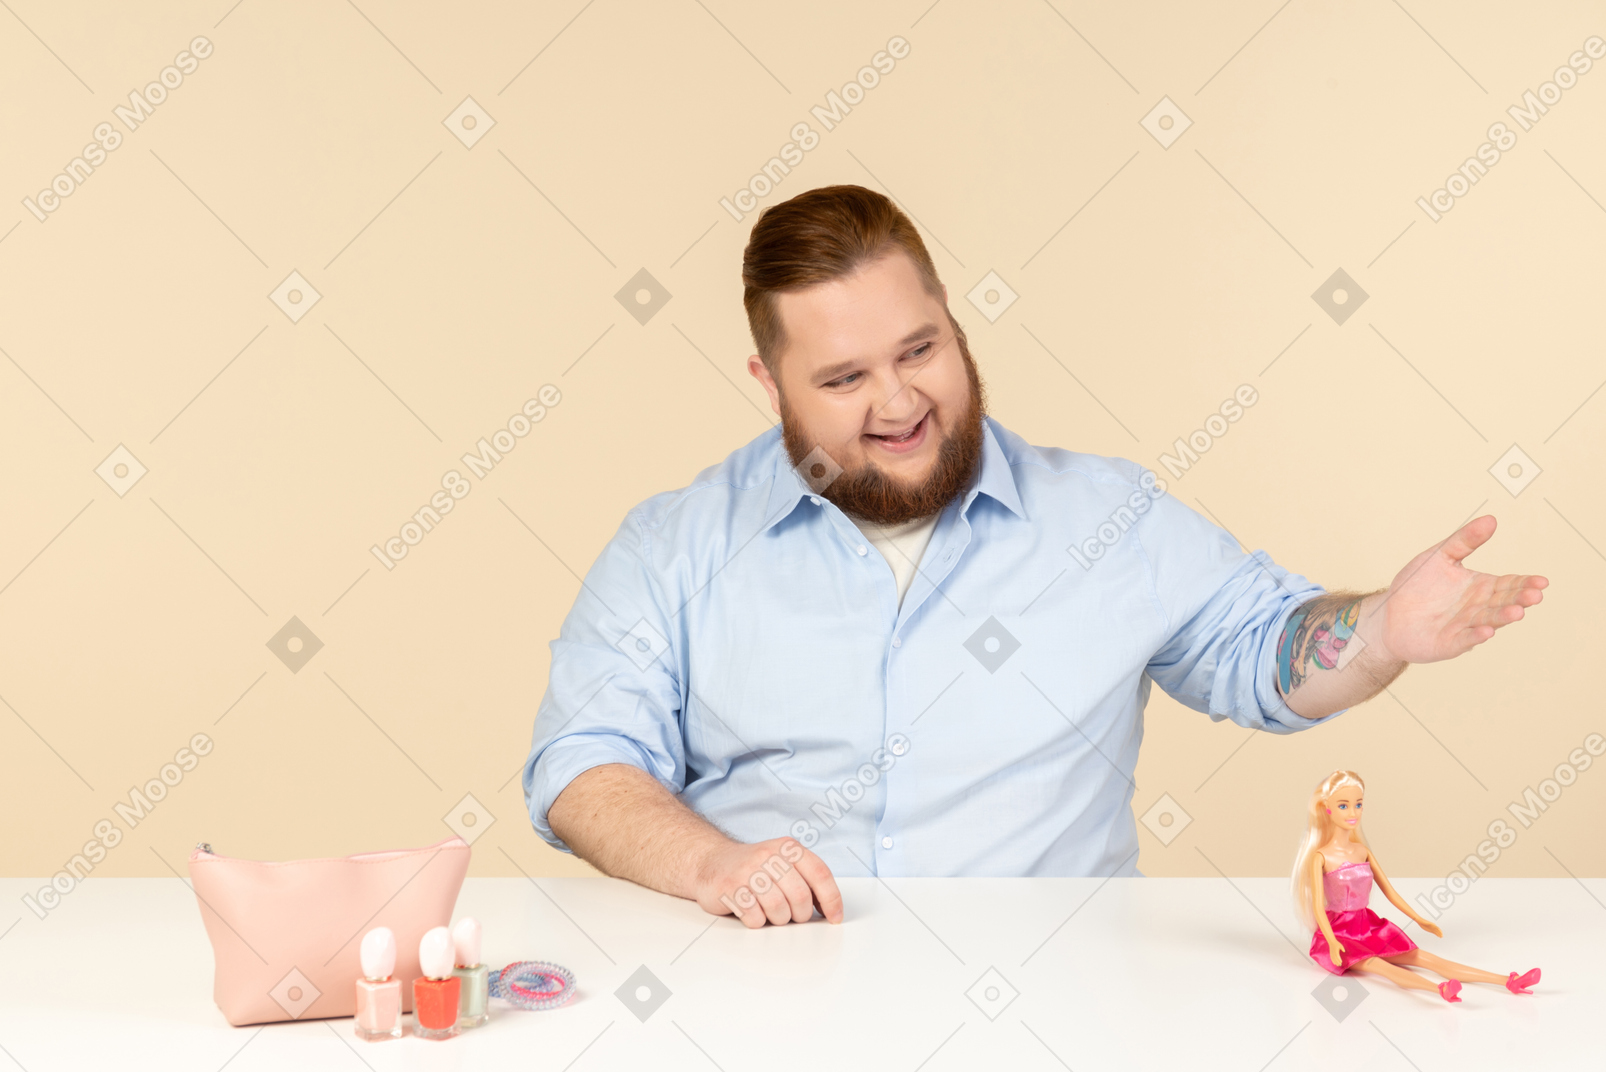 Lachender großer mann, der am tisch mit kosmetik und barbie-puppe darauf sitzt